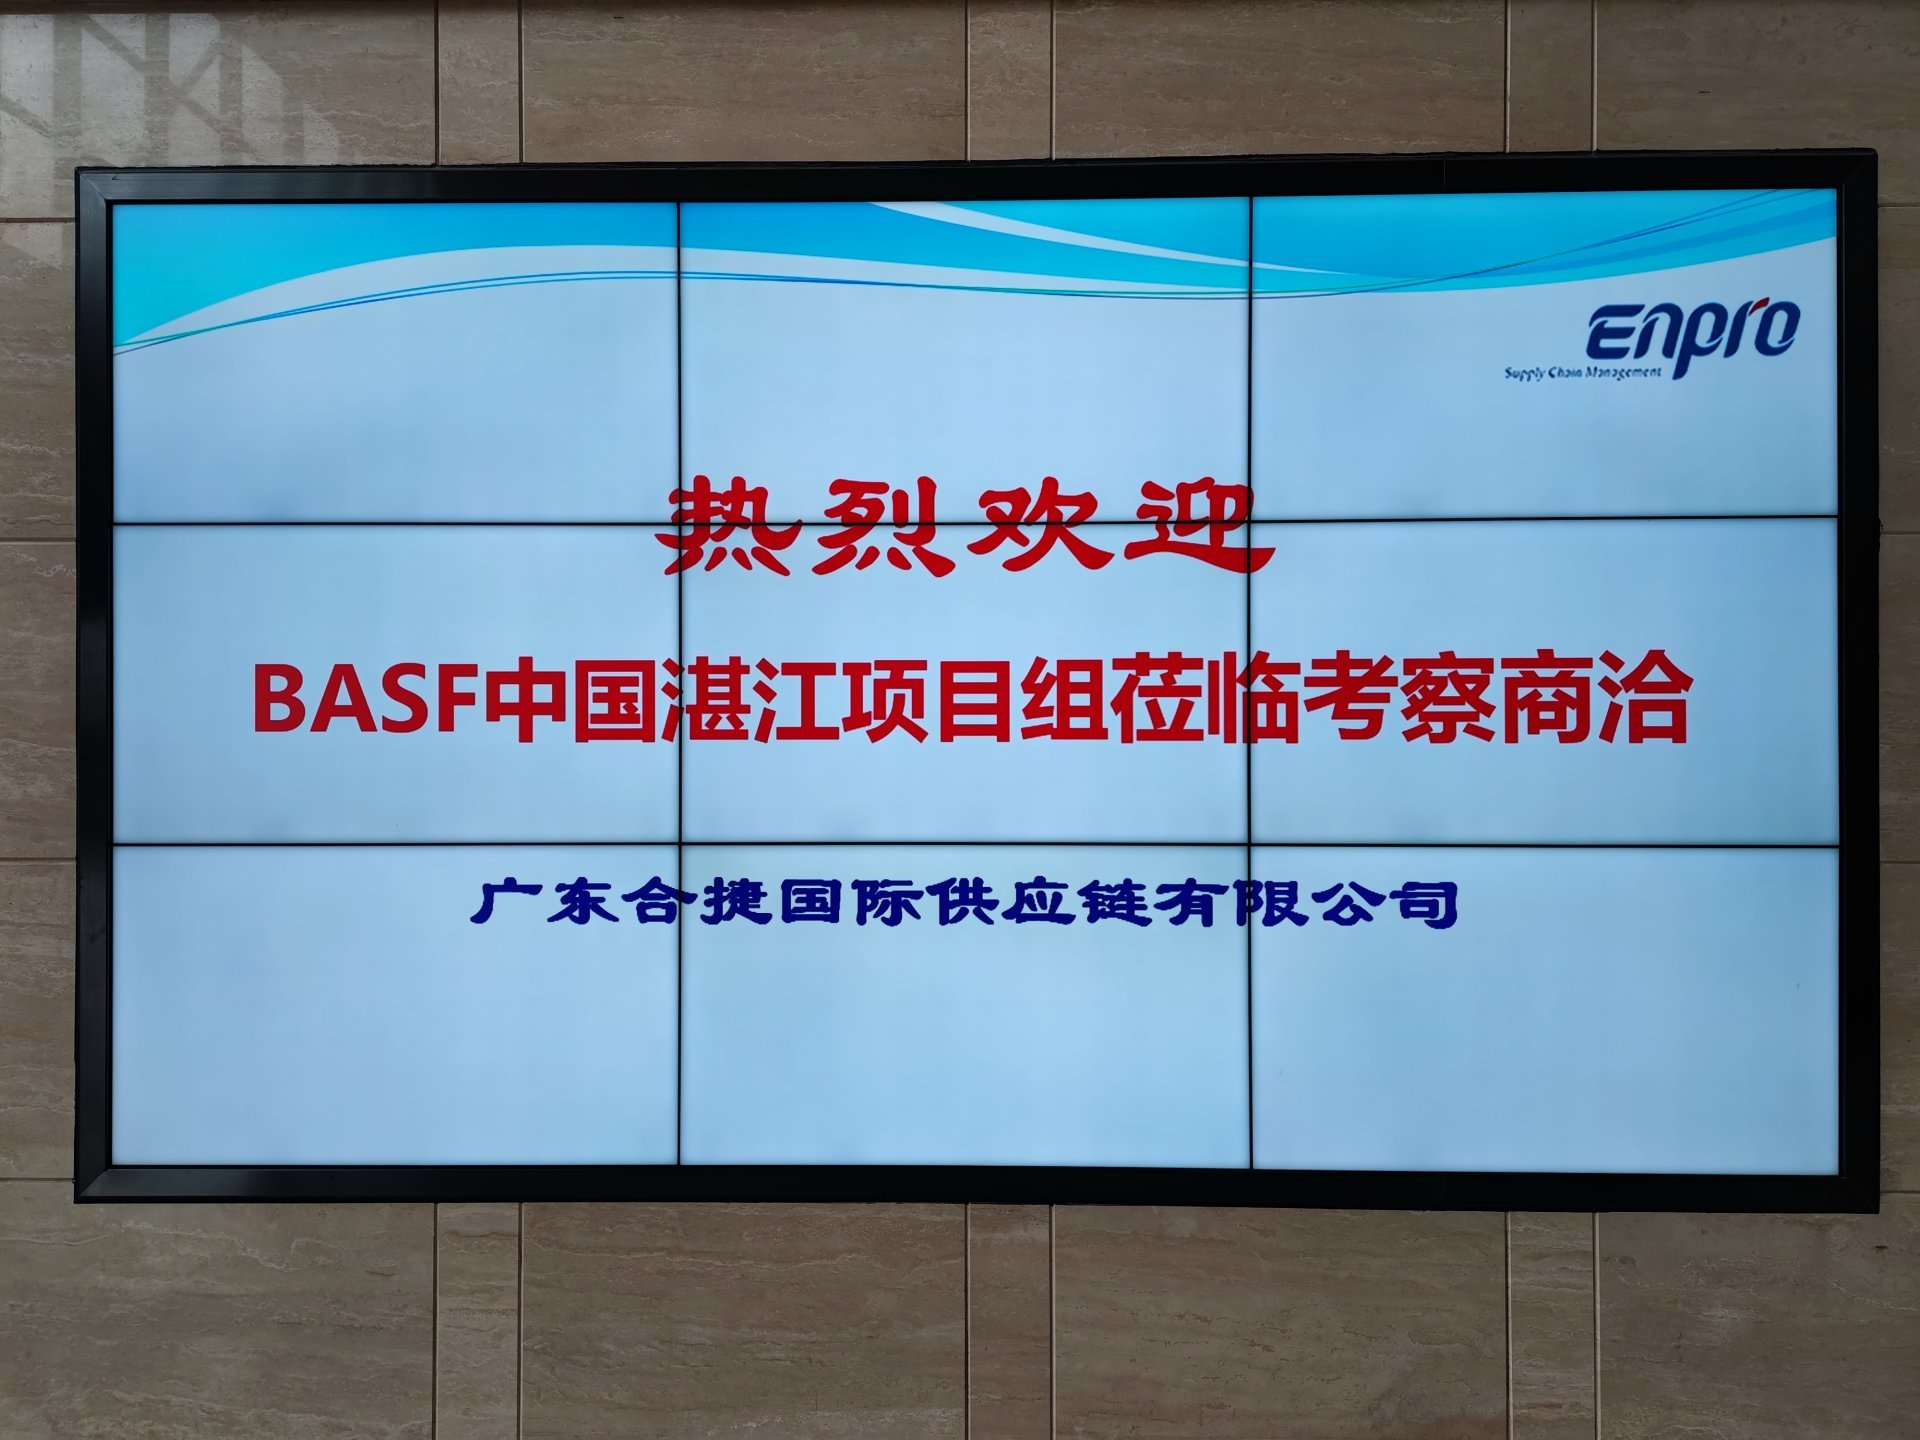 BASF中国湛江项目组莅临考察商洽